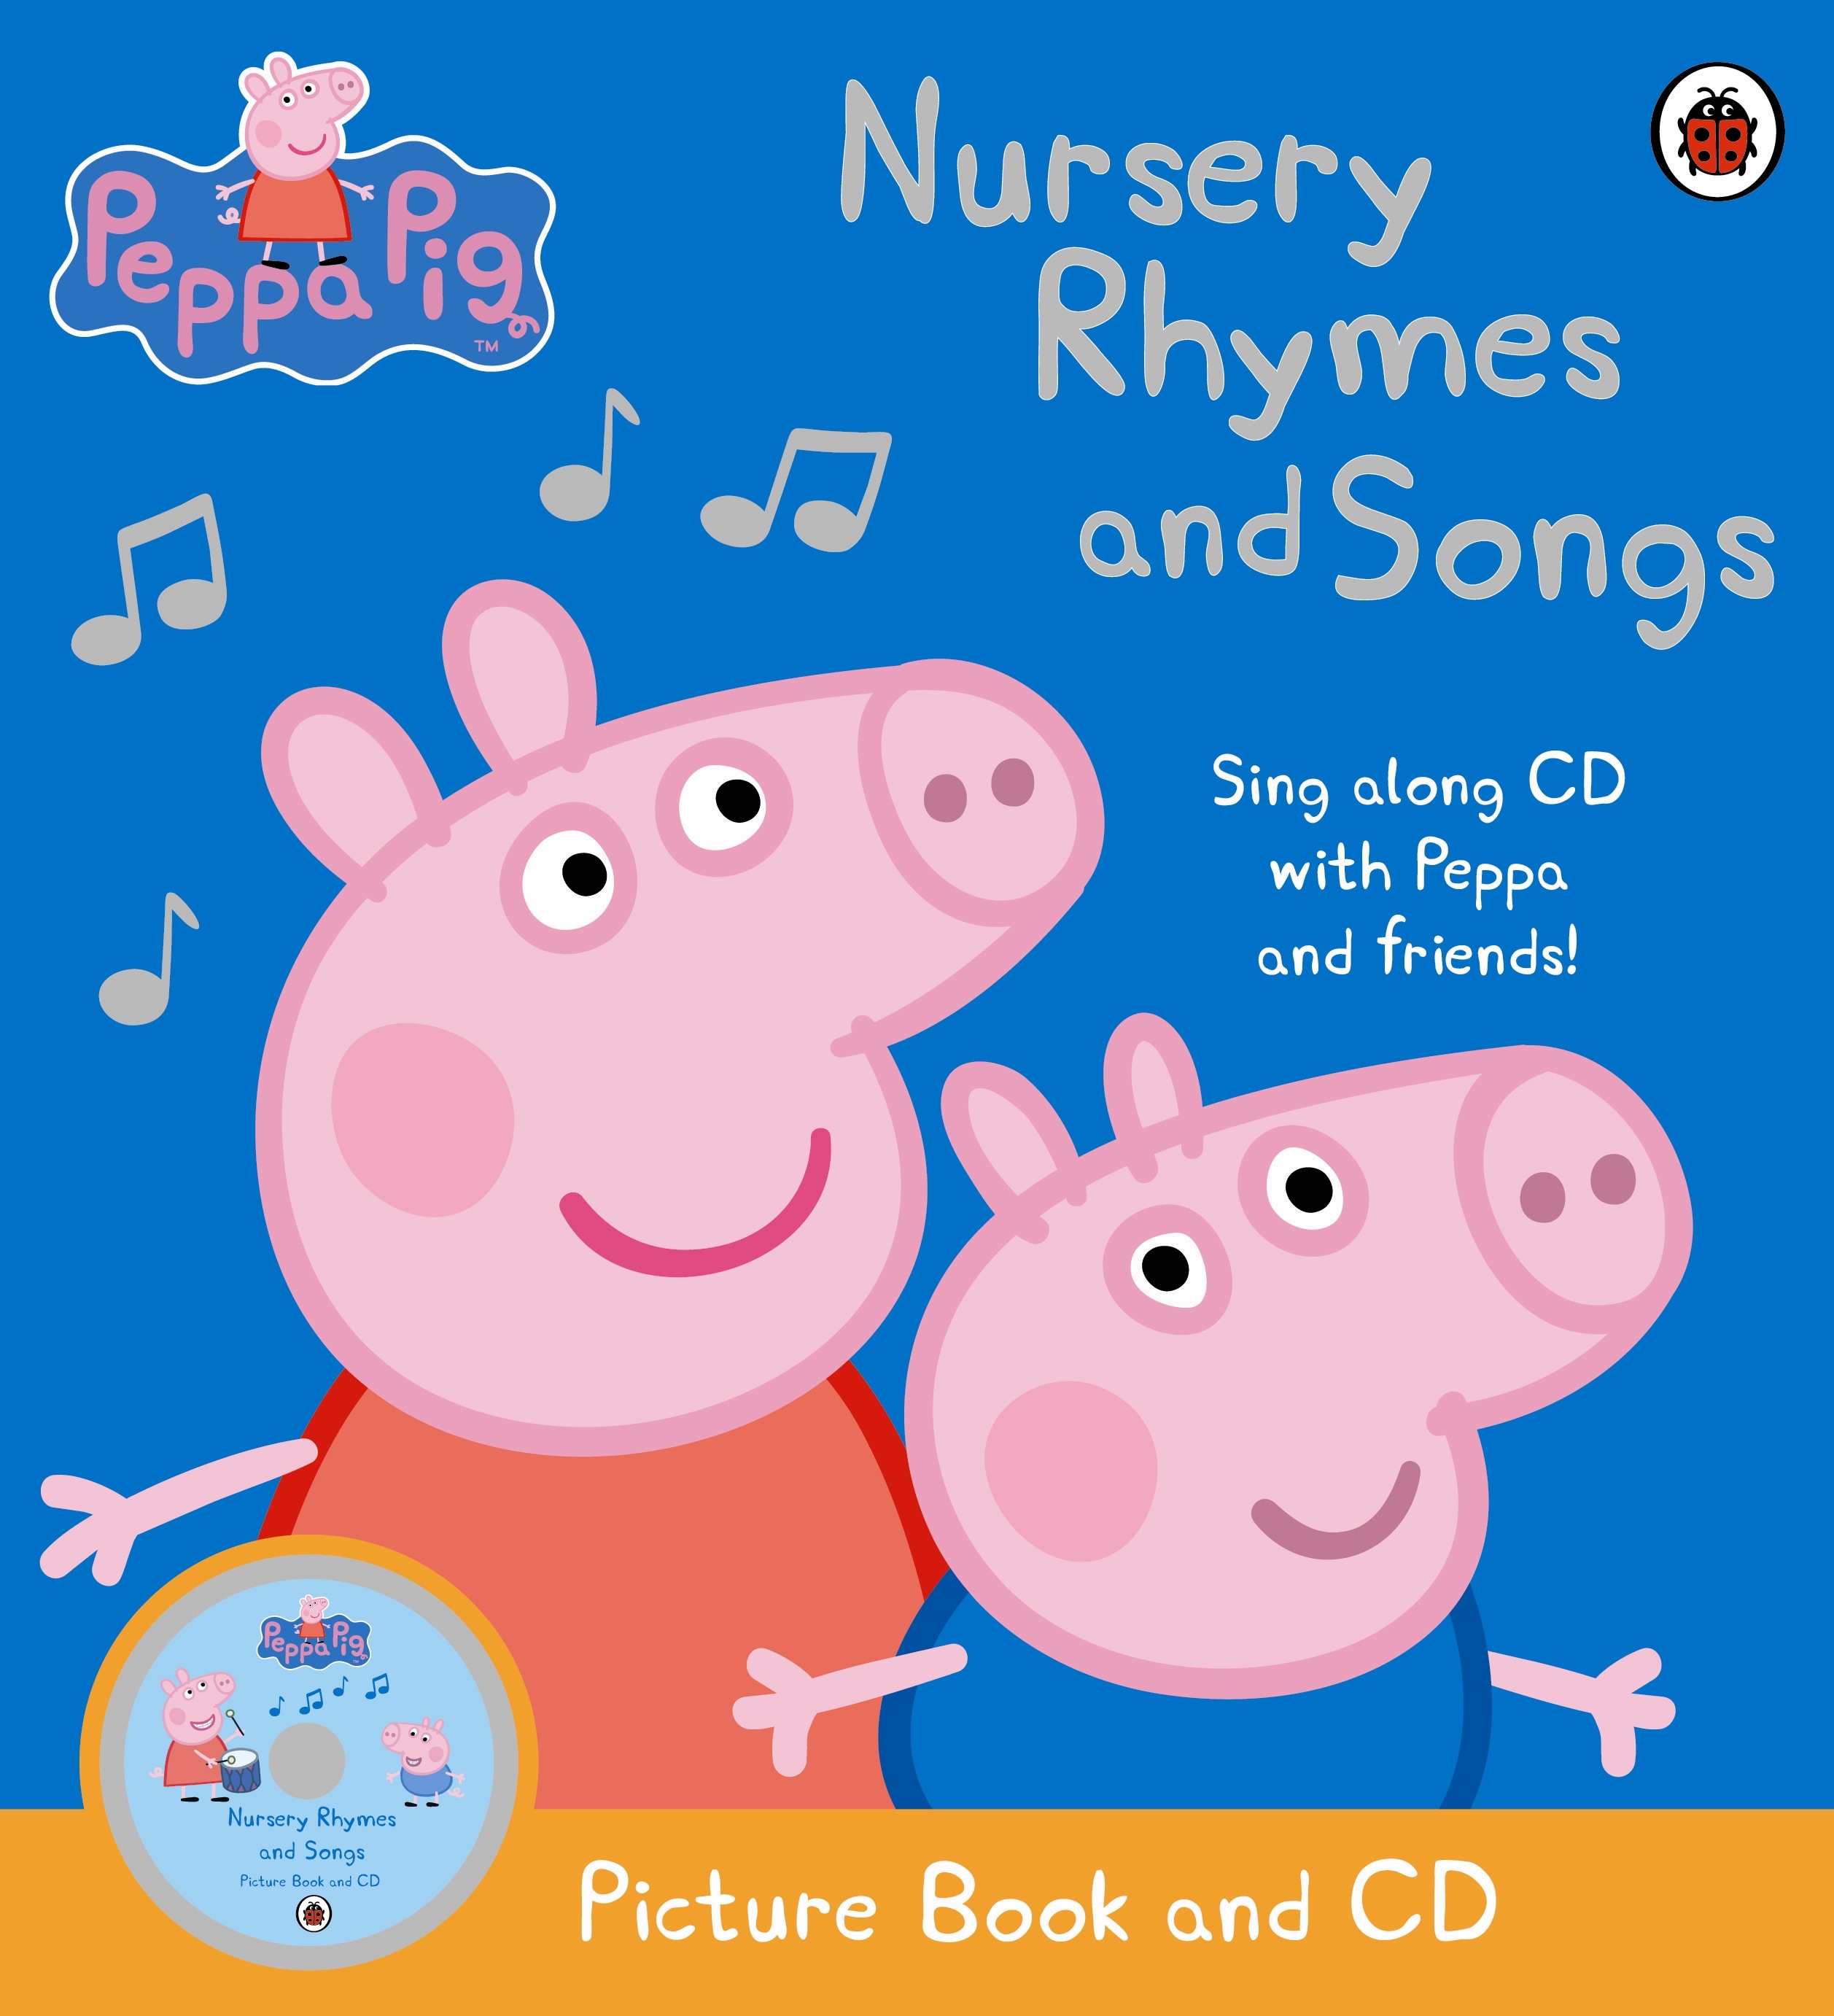 Book “Peppa Pig: Nursery Rhymes and Songs” by Peppa Pig — June 3, 2010